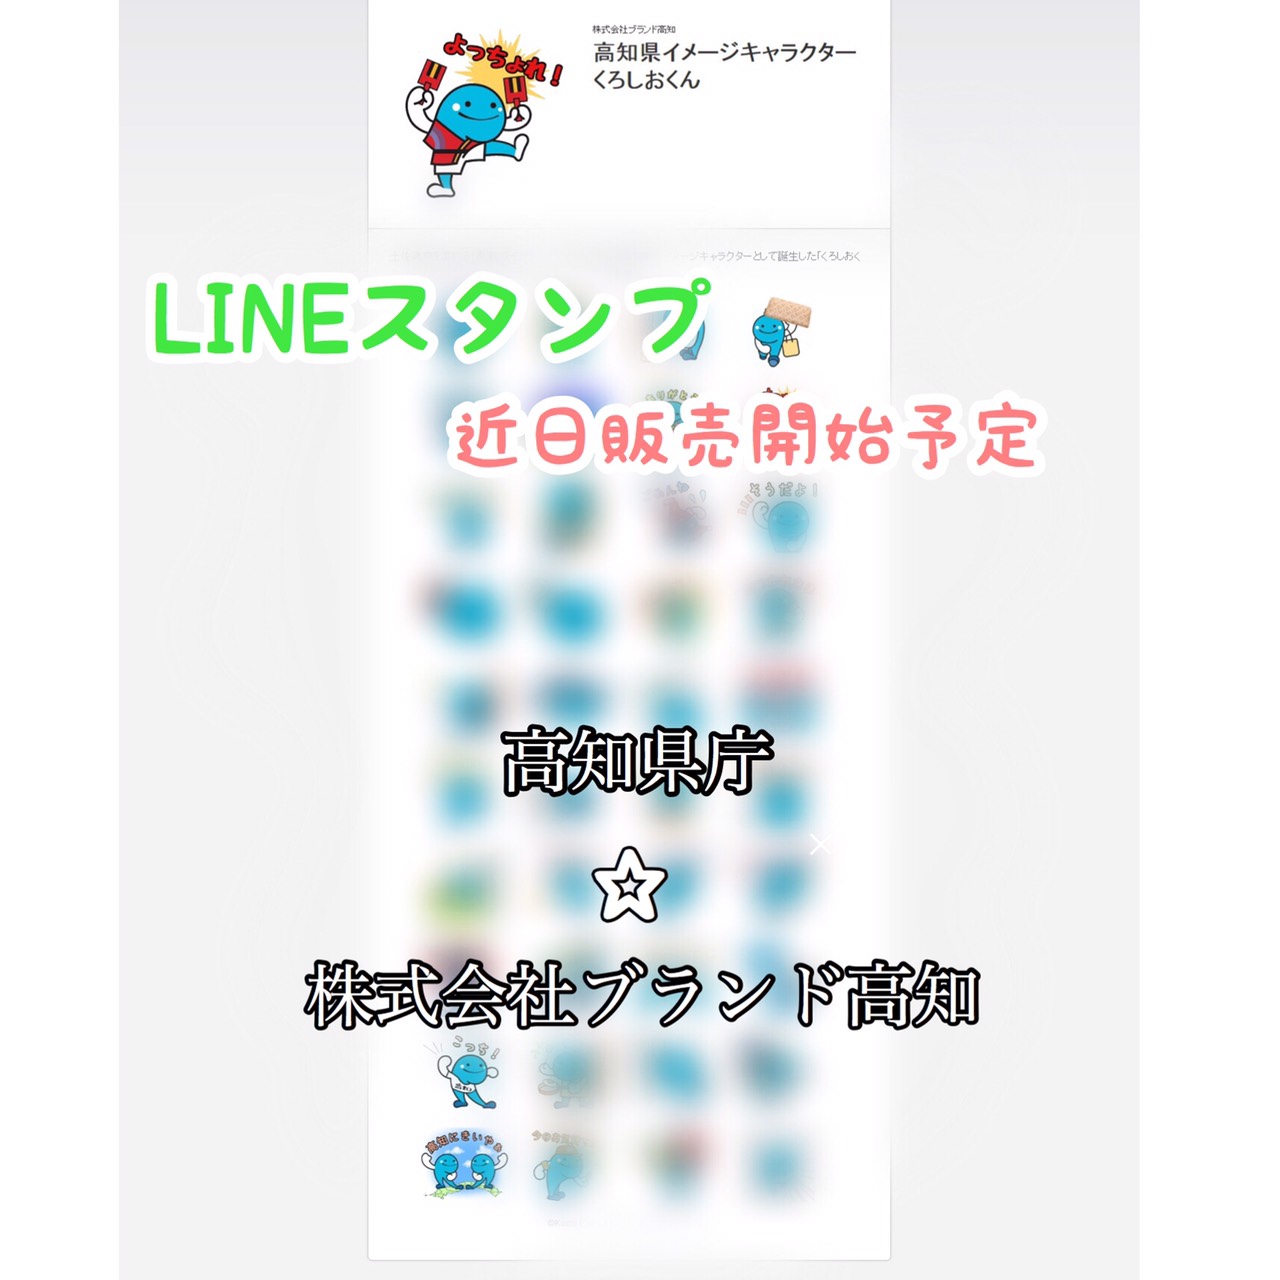 【コラボ企画】高知県イメージキャラクター「くろしおくん」のLINEスタンプが、近日販売開始予定！？